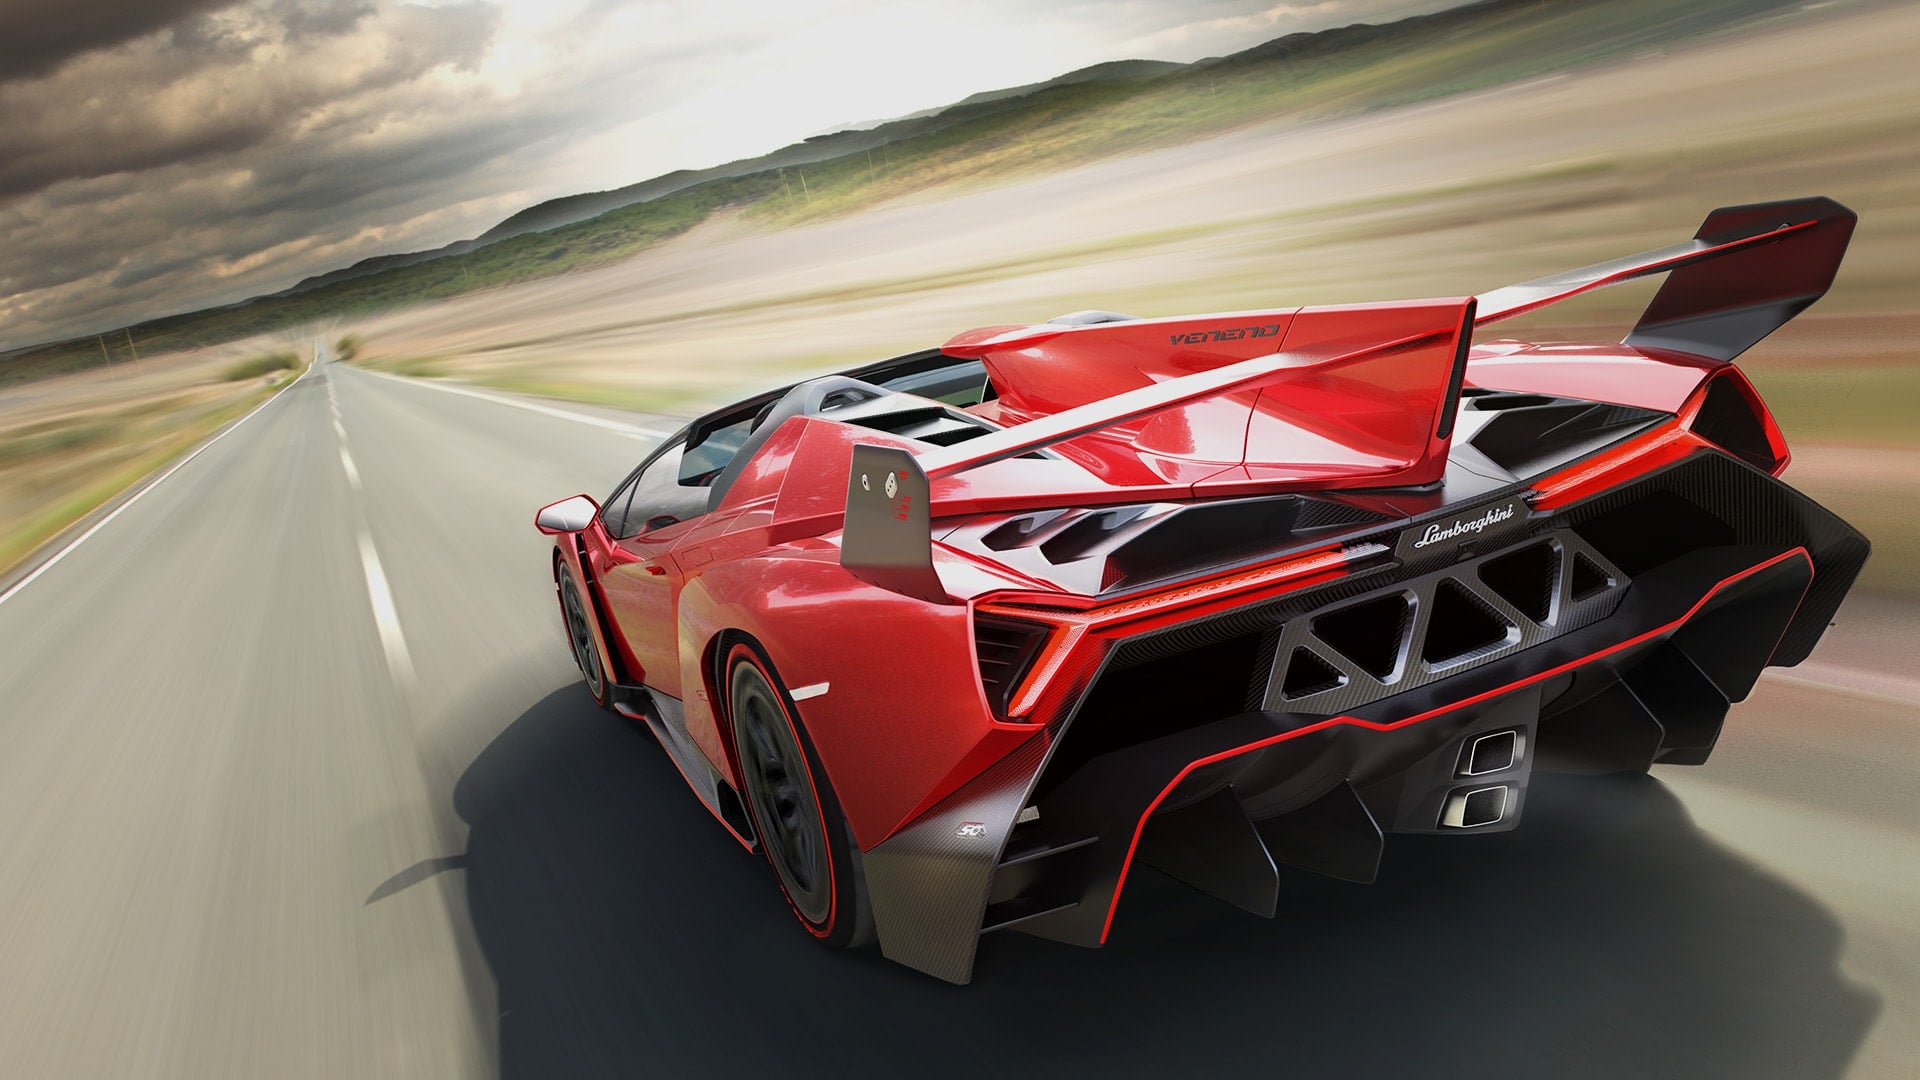 Lamborghini Veneno - $4.5 million - Most Expensive Cars 2020